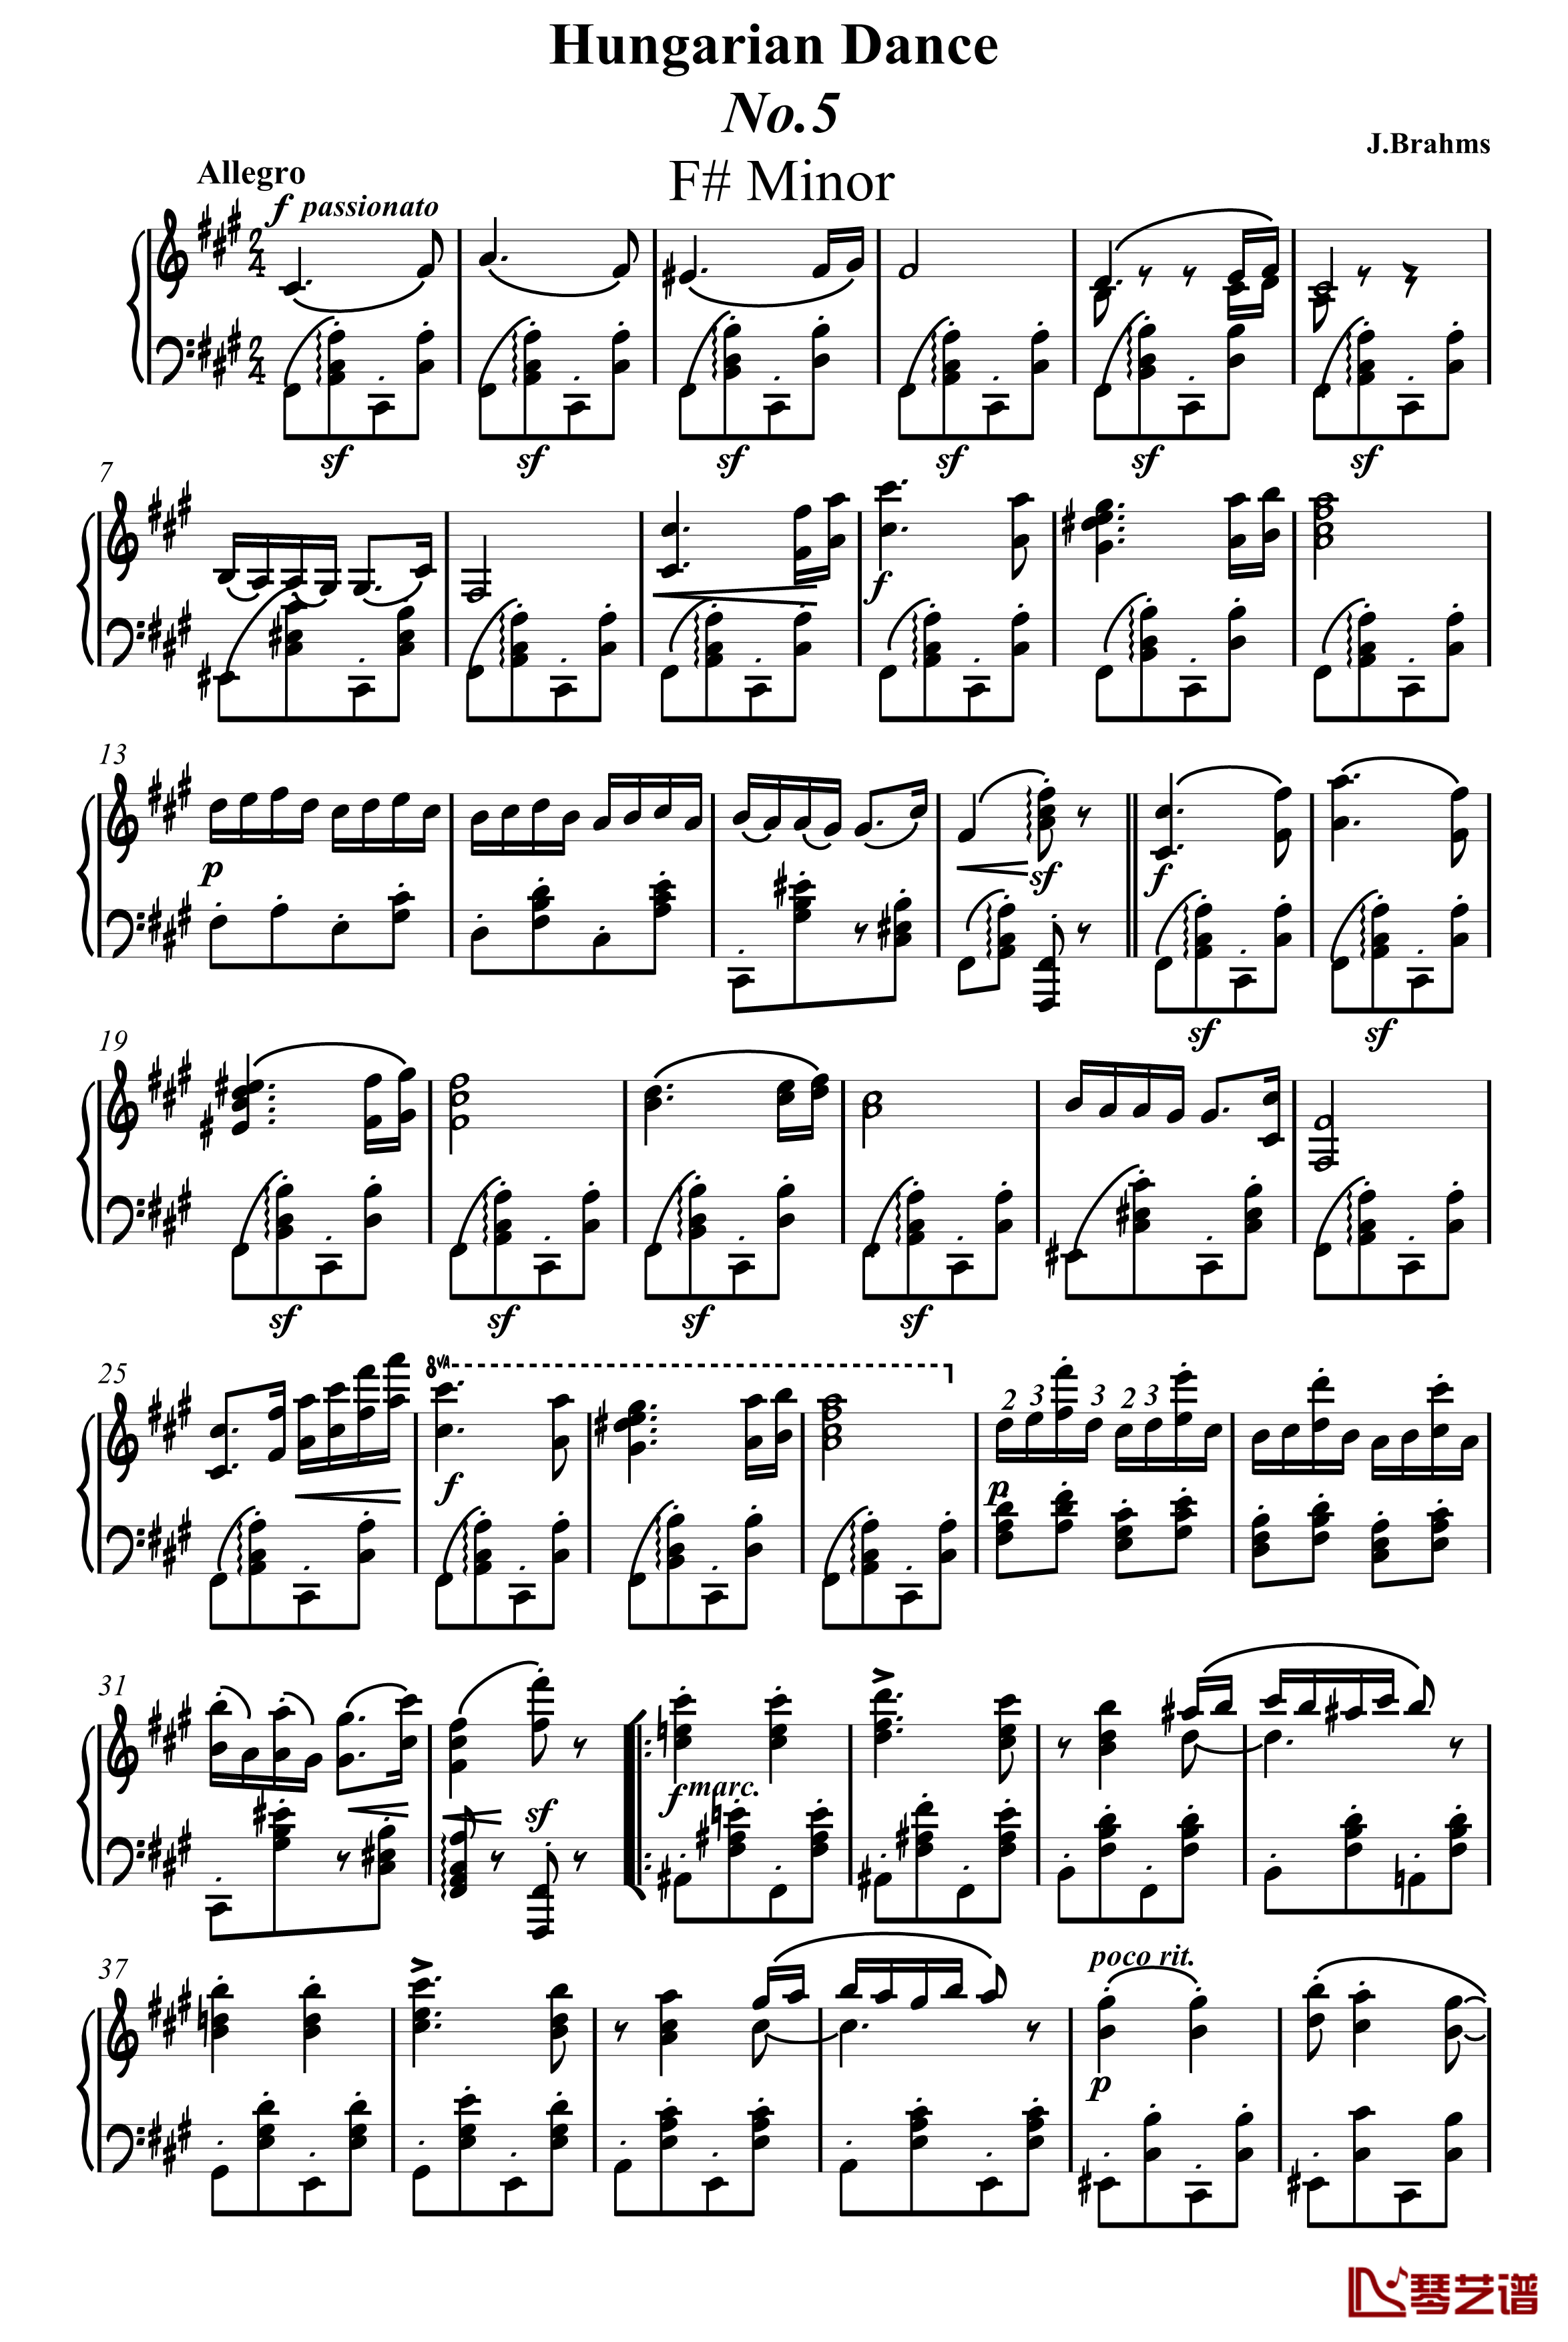 匈牙利舞曲钢琴谱-独奏版-勃拉姆斯-Brahms1